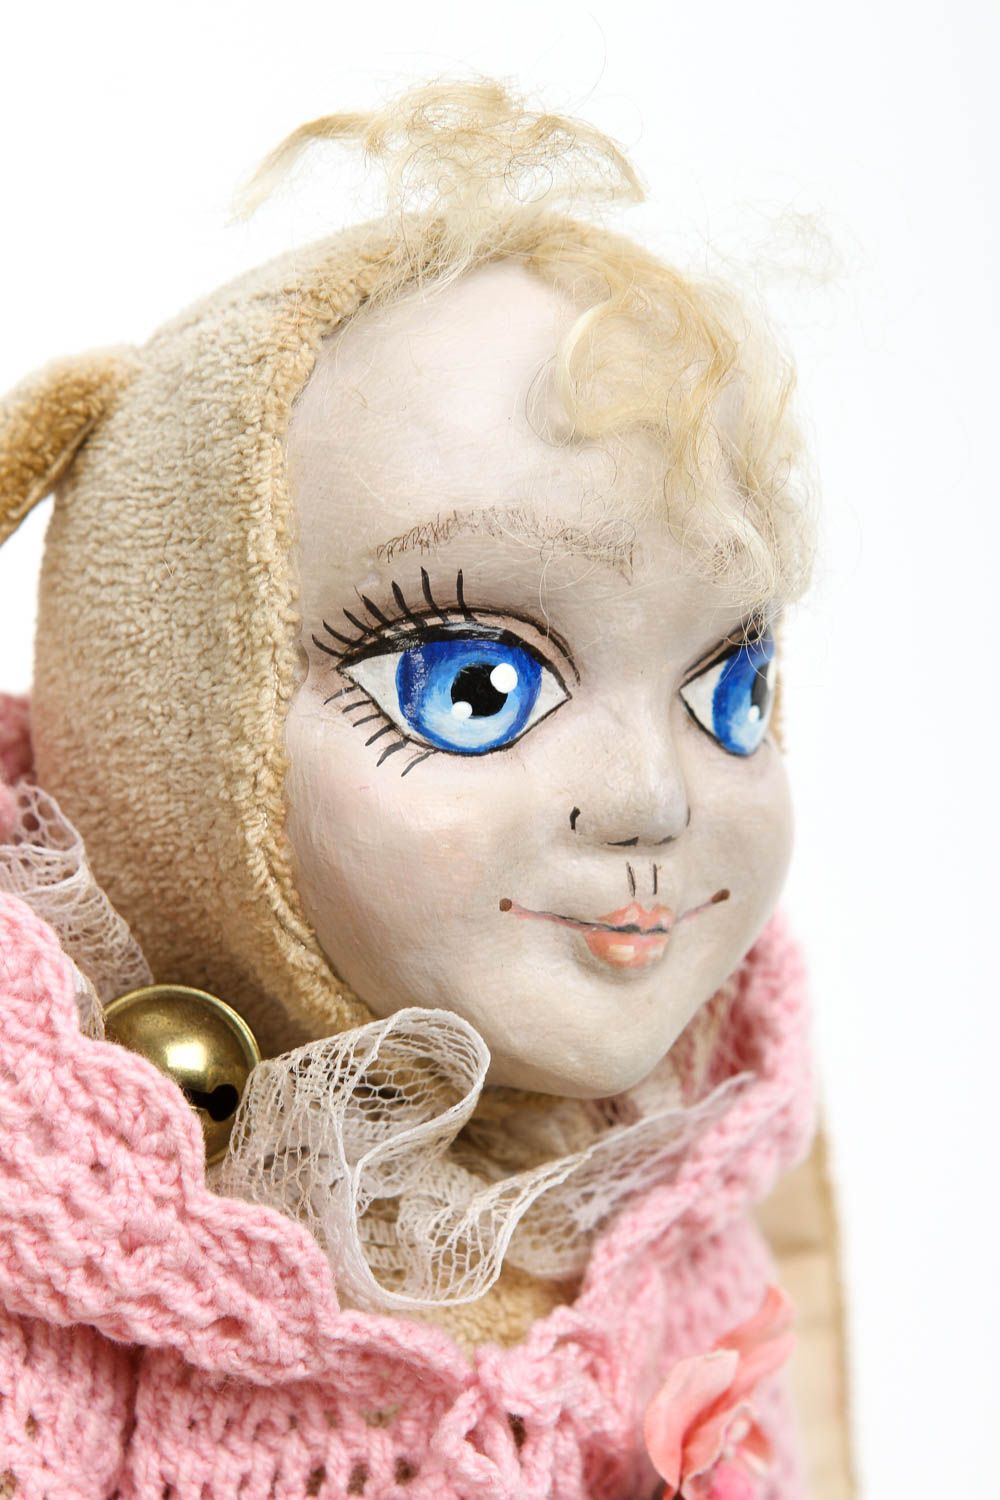 Кукла ручной работы кукла из ткани микровельвета авторская кукла с ушками фото 2